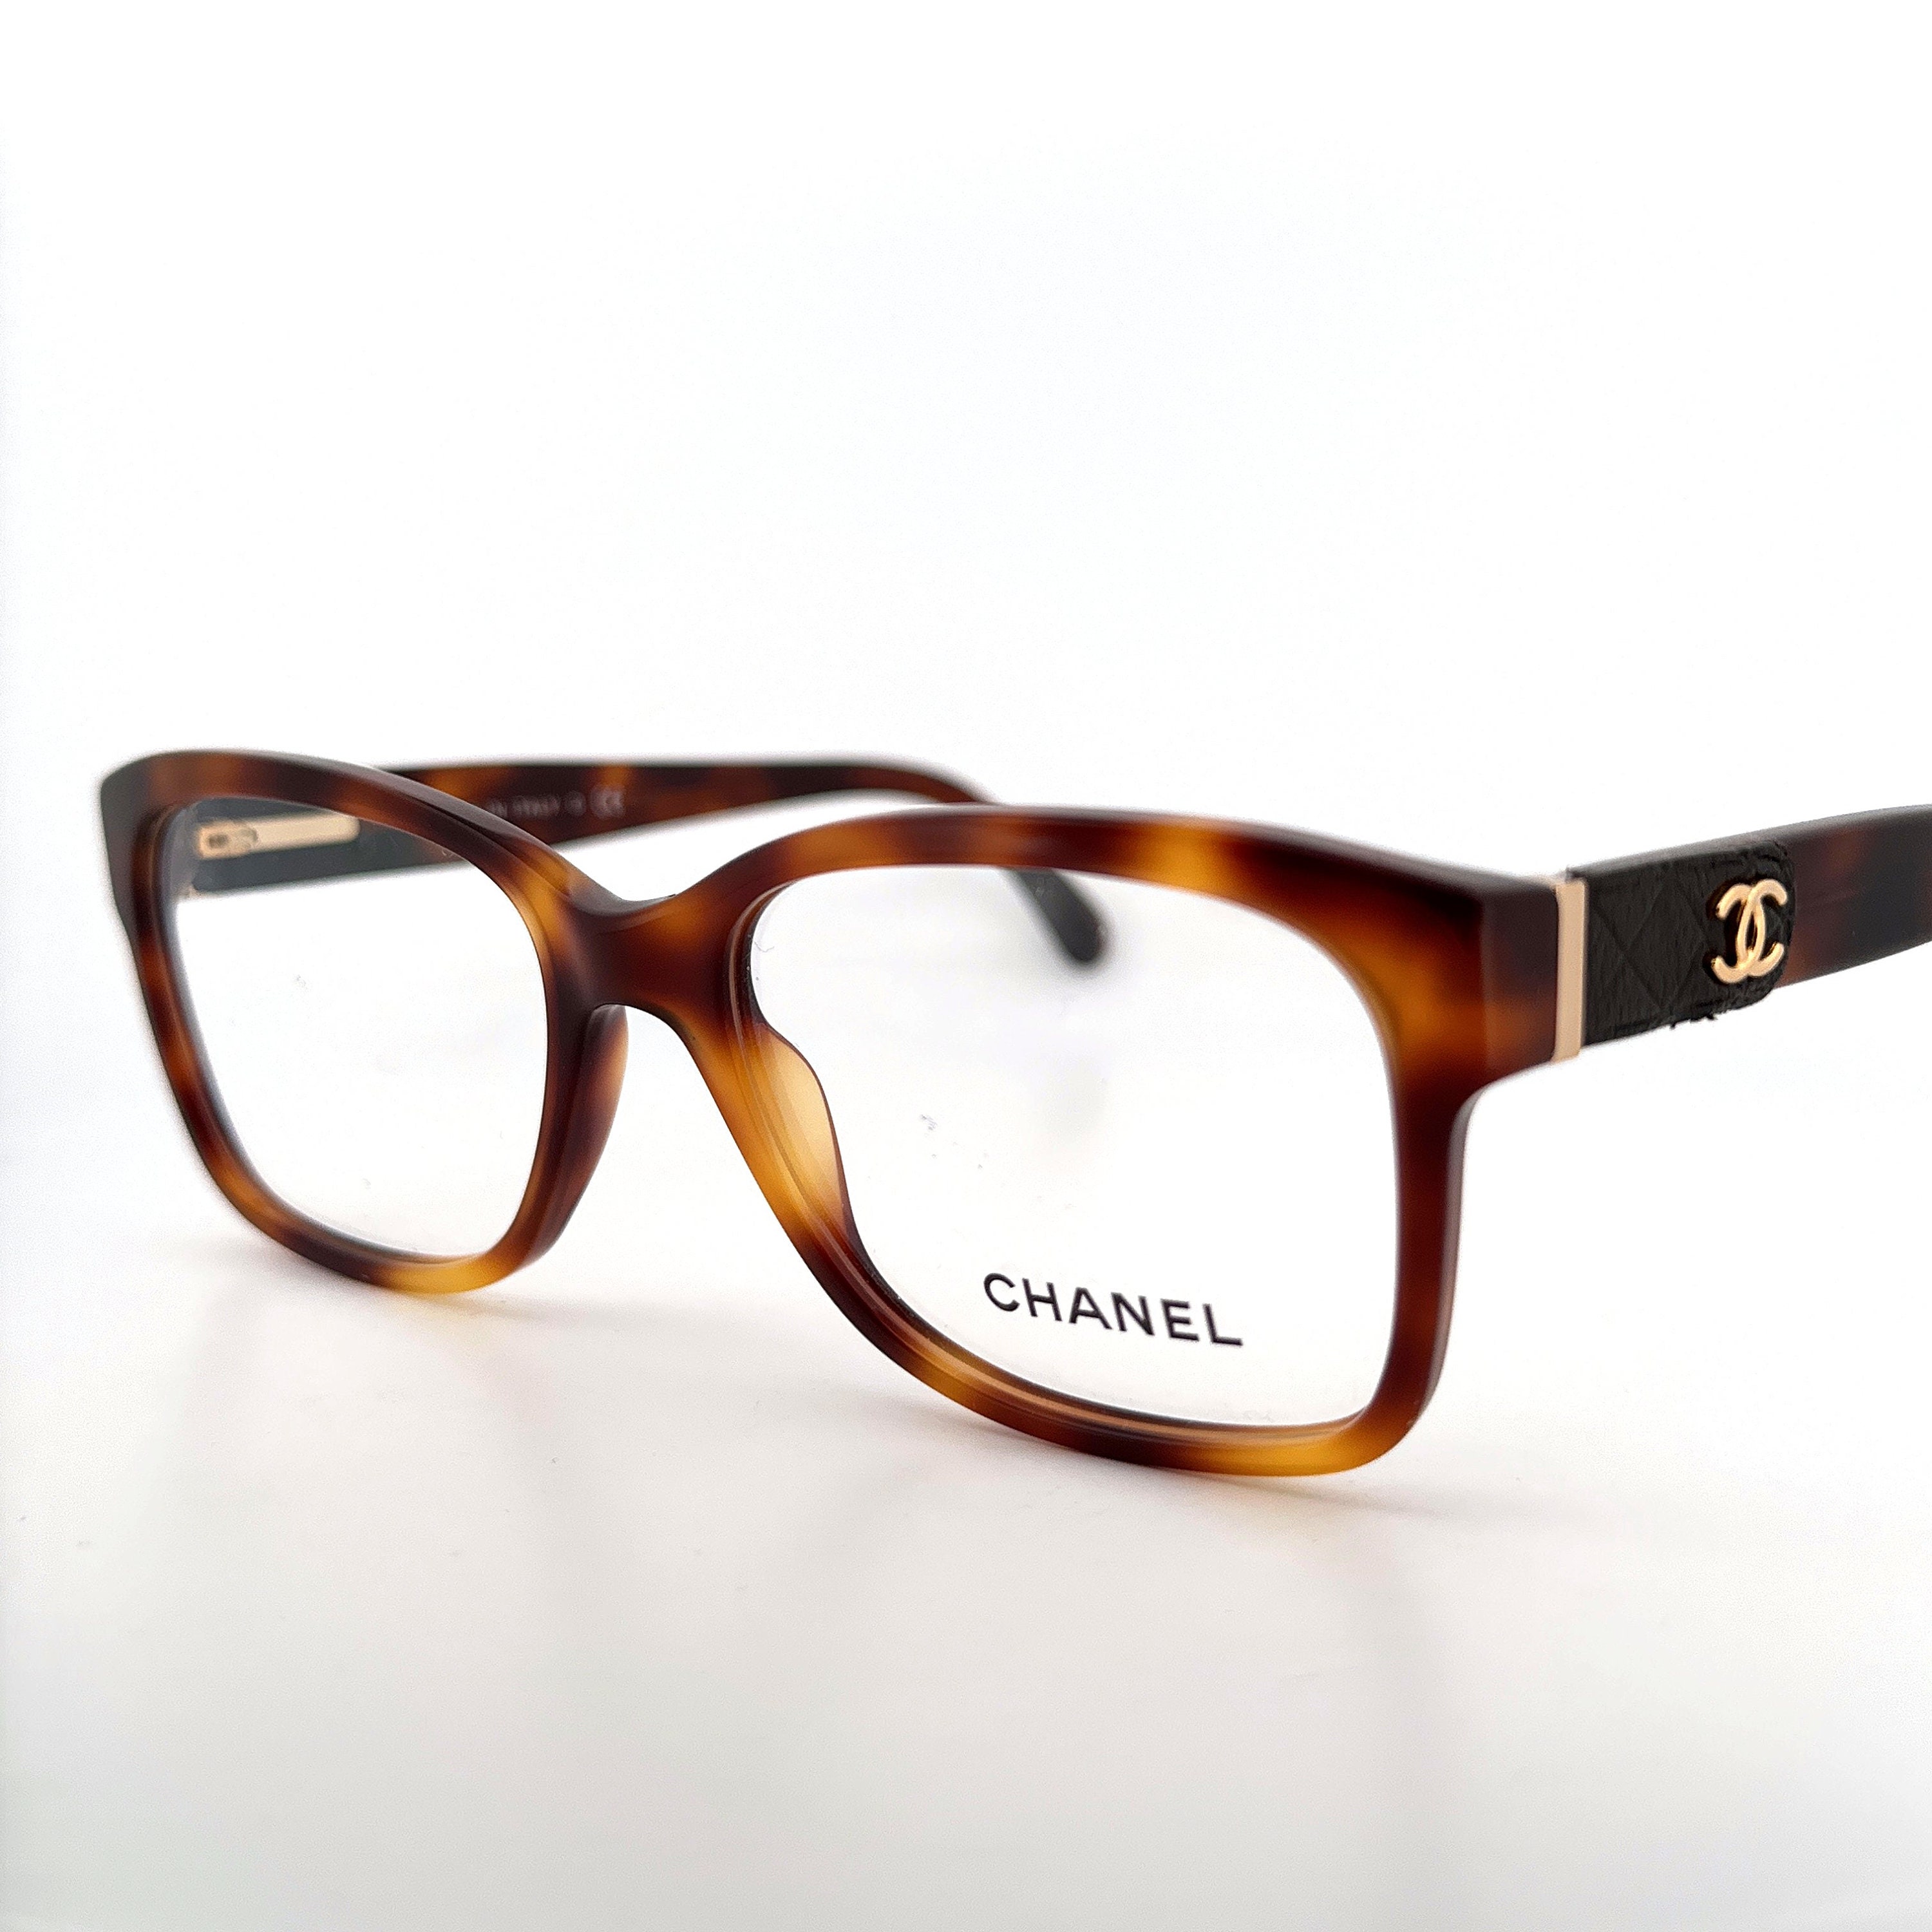 chanel reading glasses frames